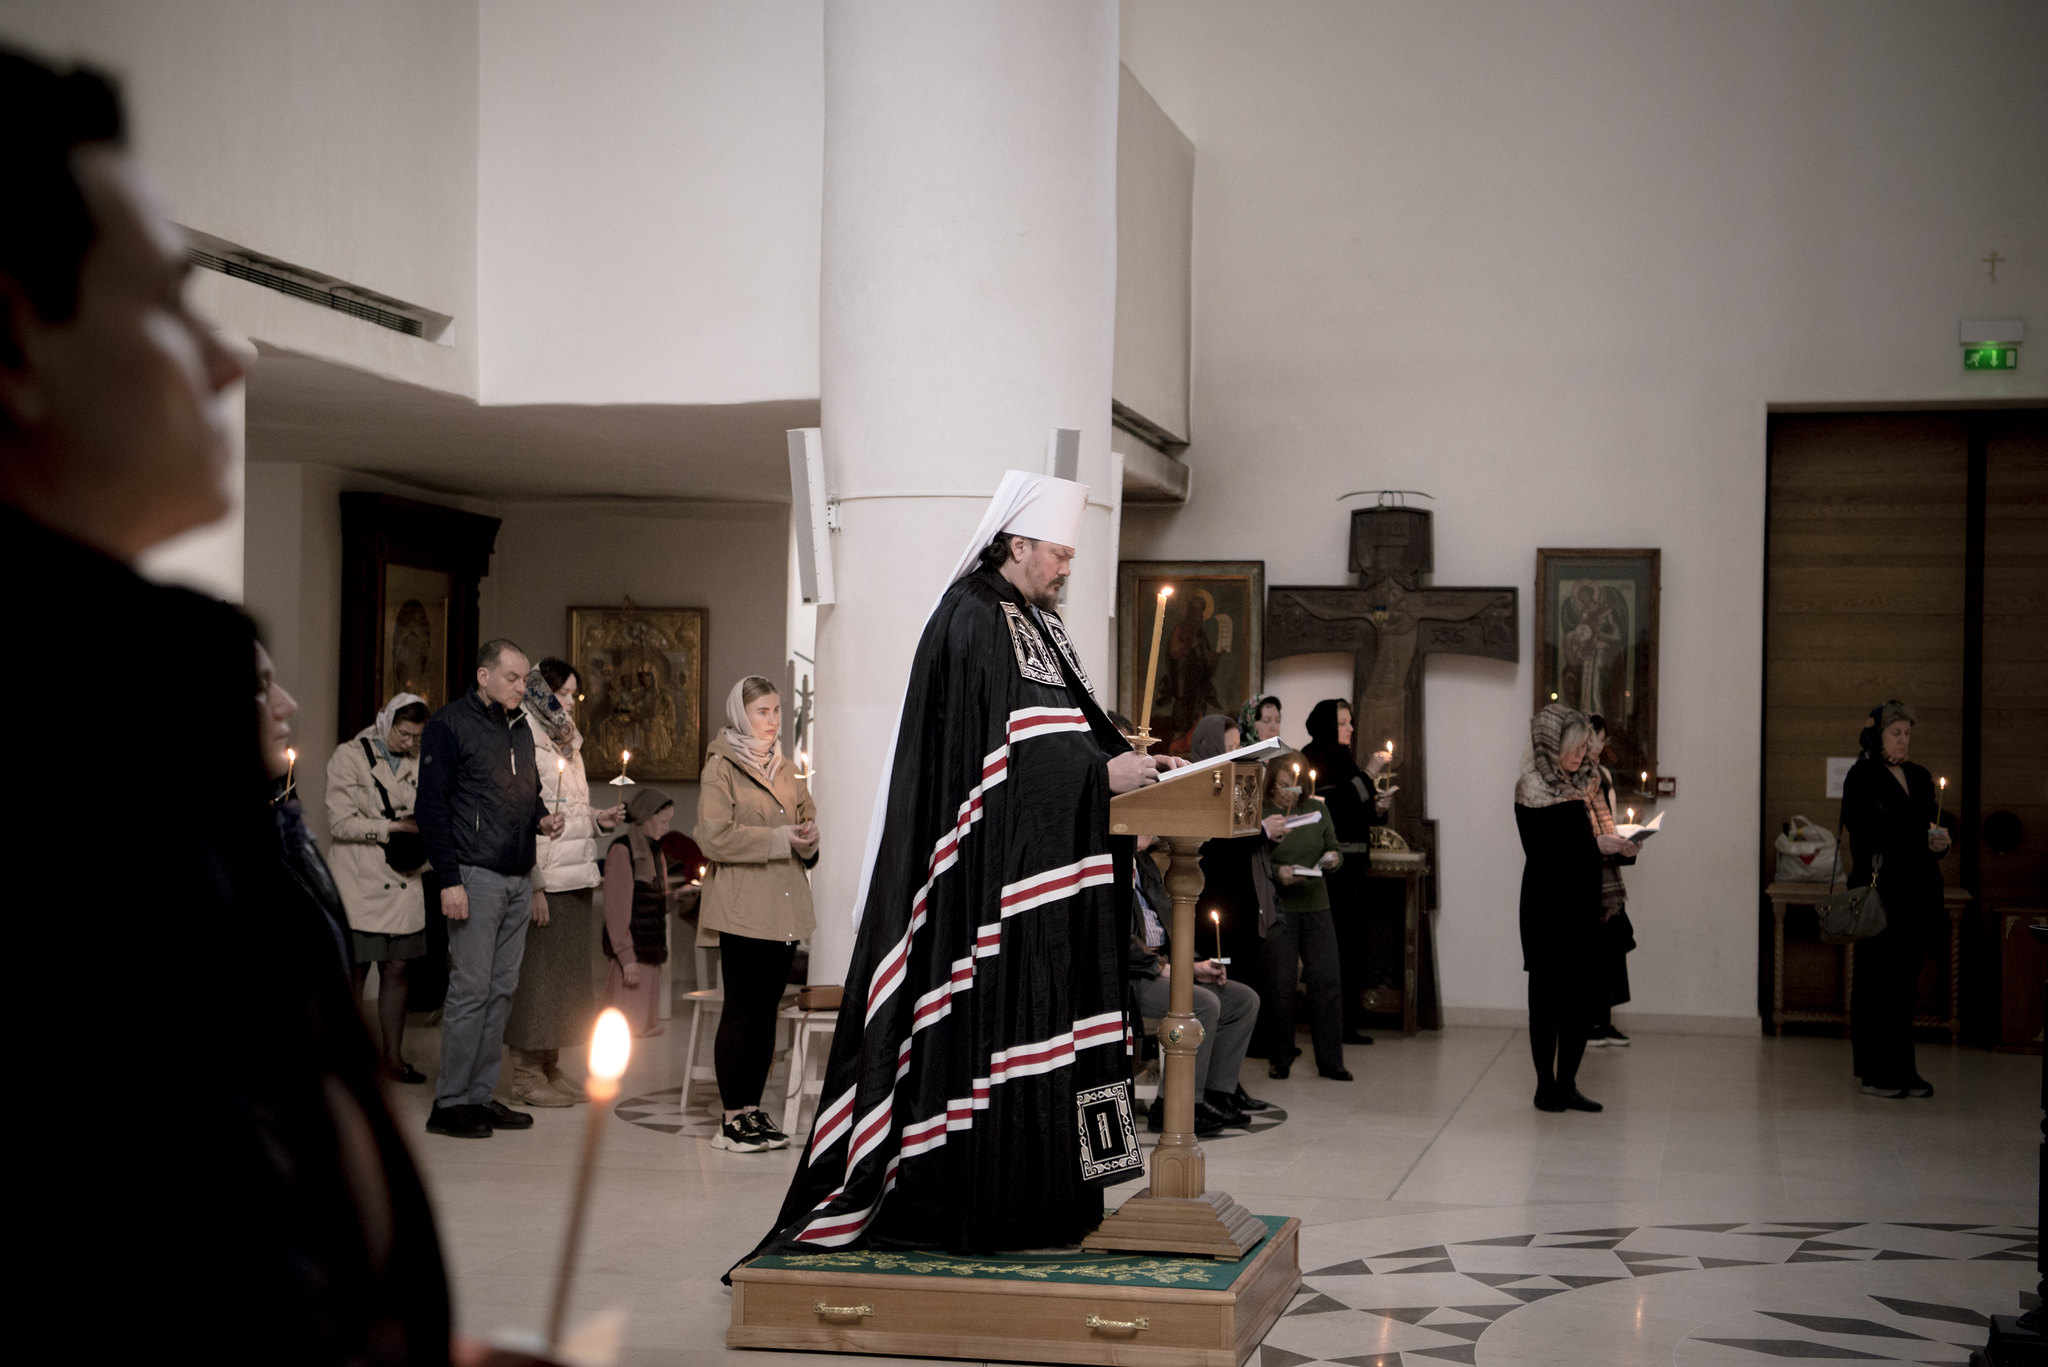 Mgr Nestor a célébré les Grandes Complies avec la lecture de la première partie du Grand canon pénitentiel du saint André de Crète